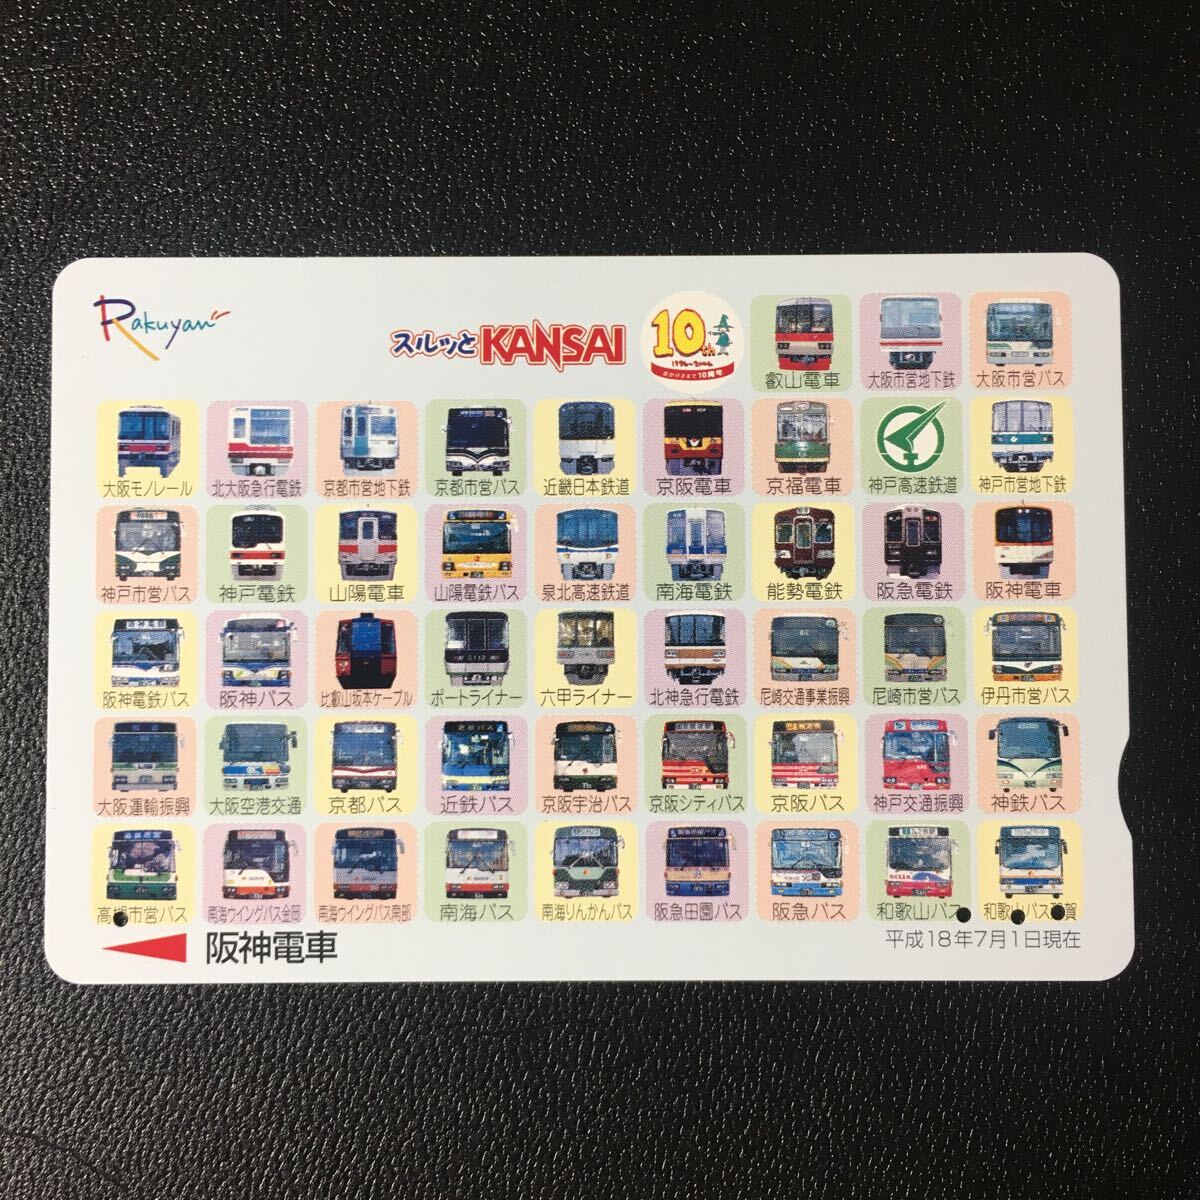 阪神/記念カード「スルッとKANSAIネットワーク(2006.07.01)」ーらくやんカード(使用済/スルッとKANSAI)_画像1